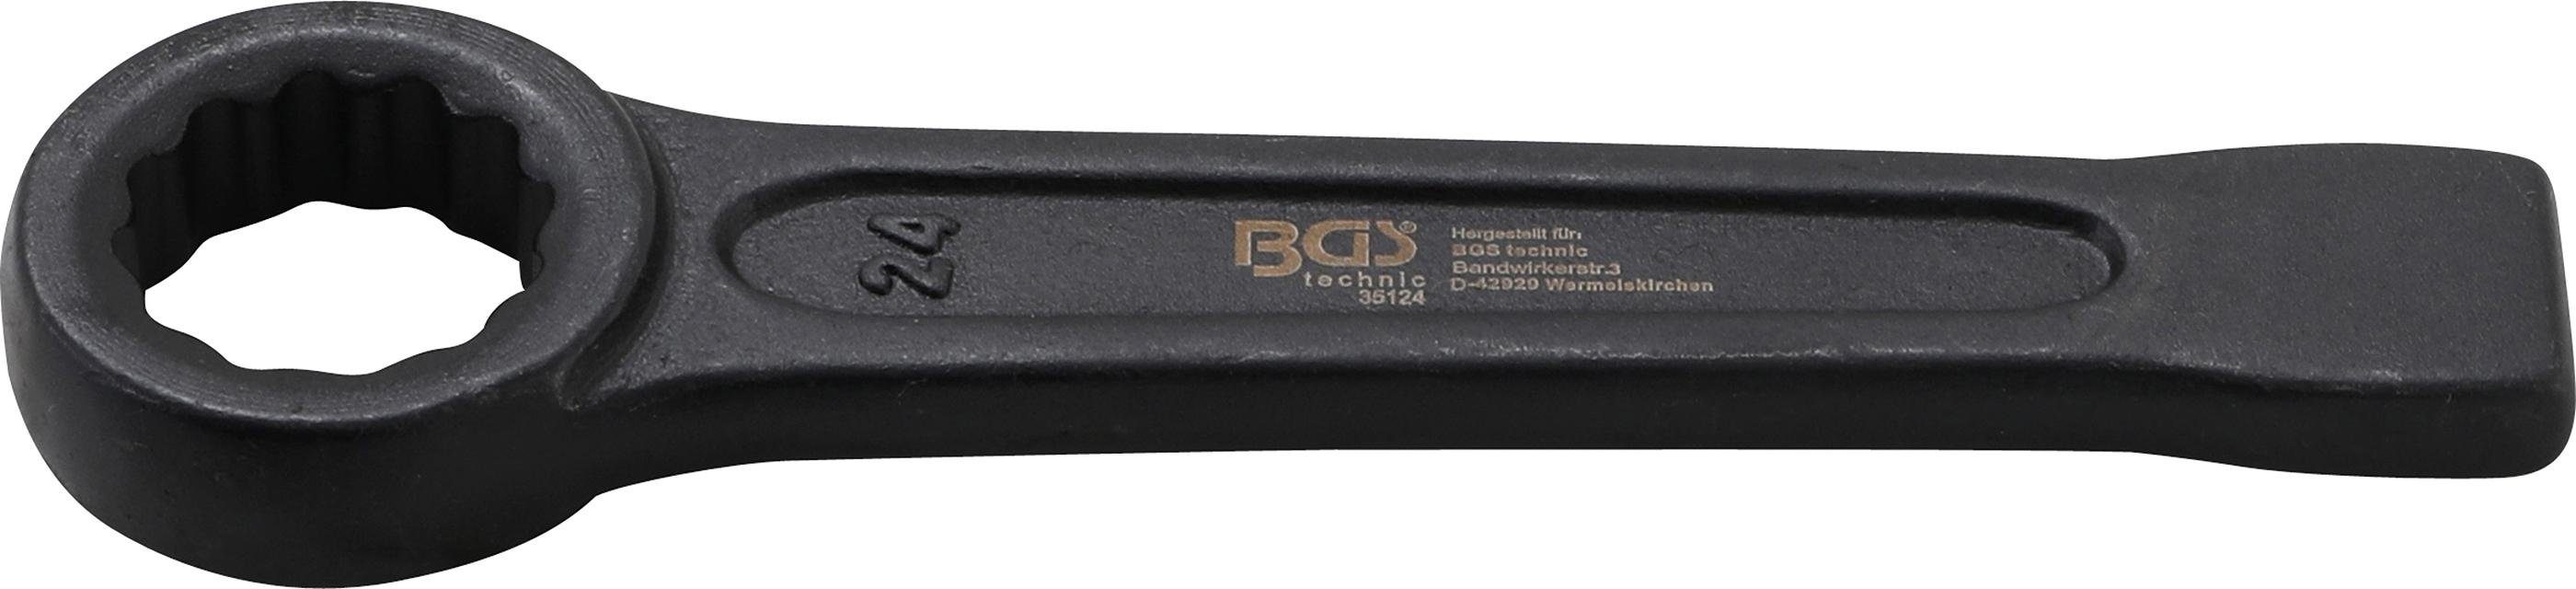 BGS technic Ringschlüssel Schlag-Ringschlüssel, SW 24 mm